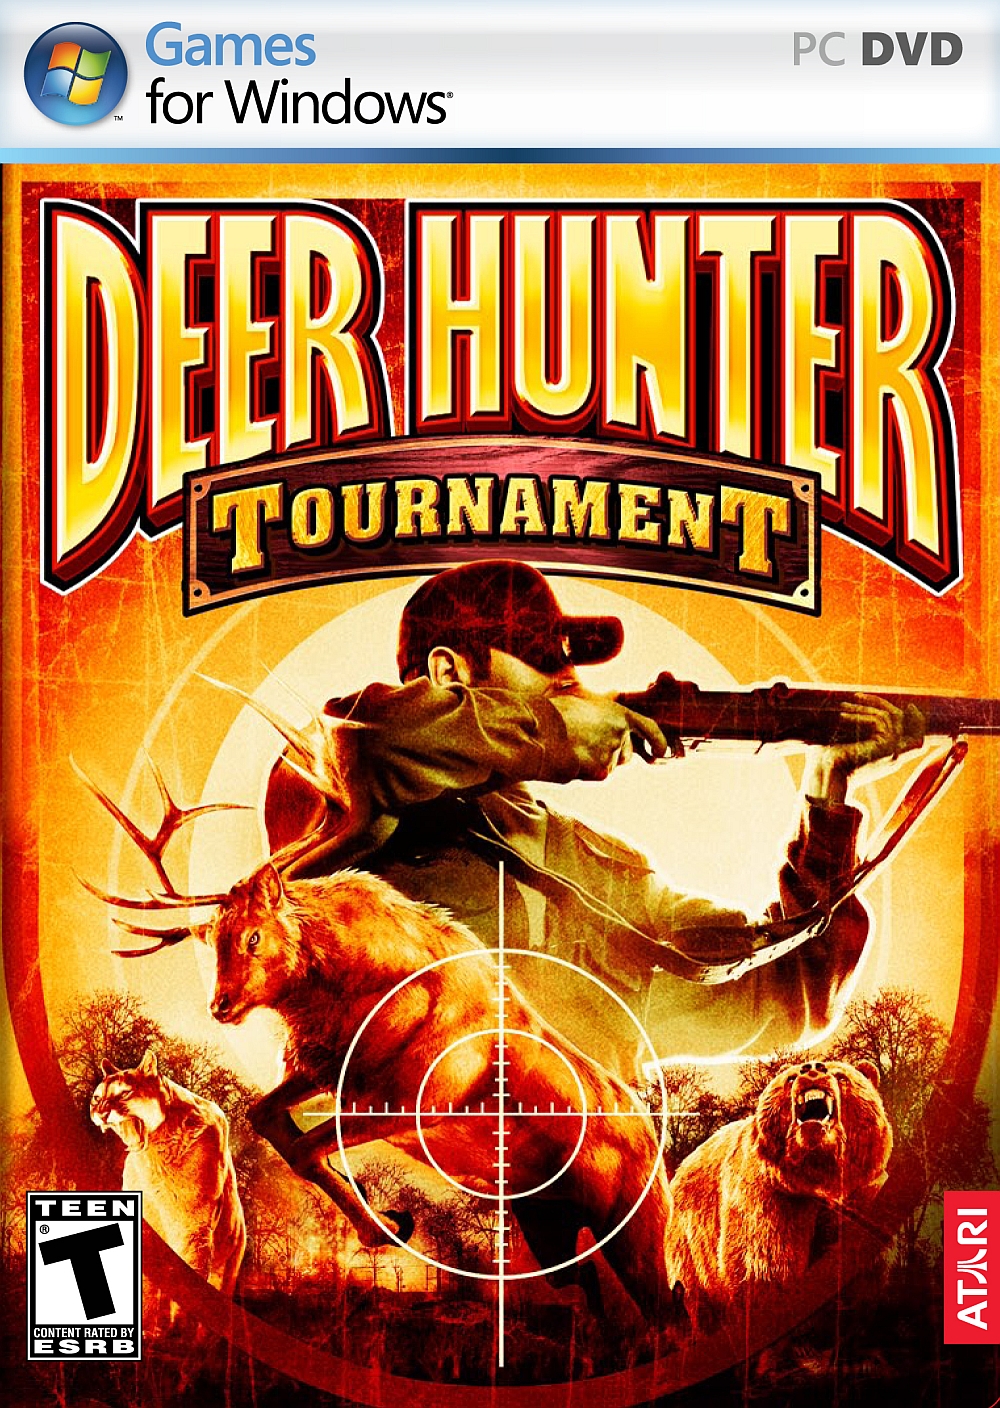 Deer hunter скачать игру на пк